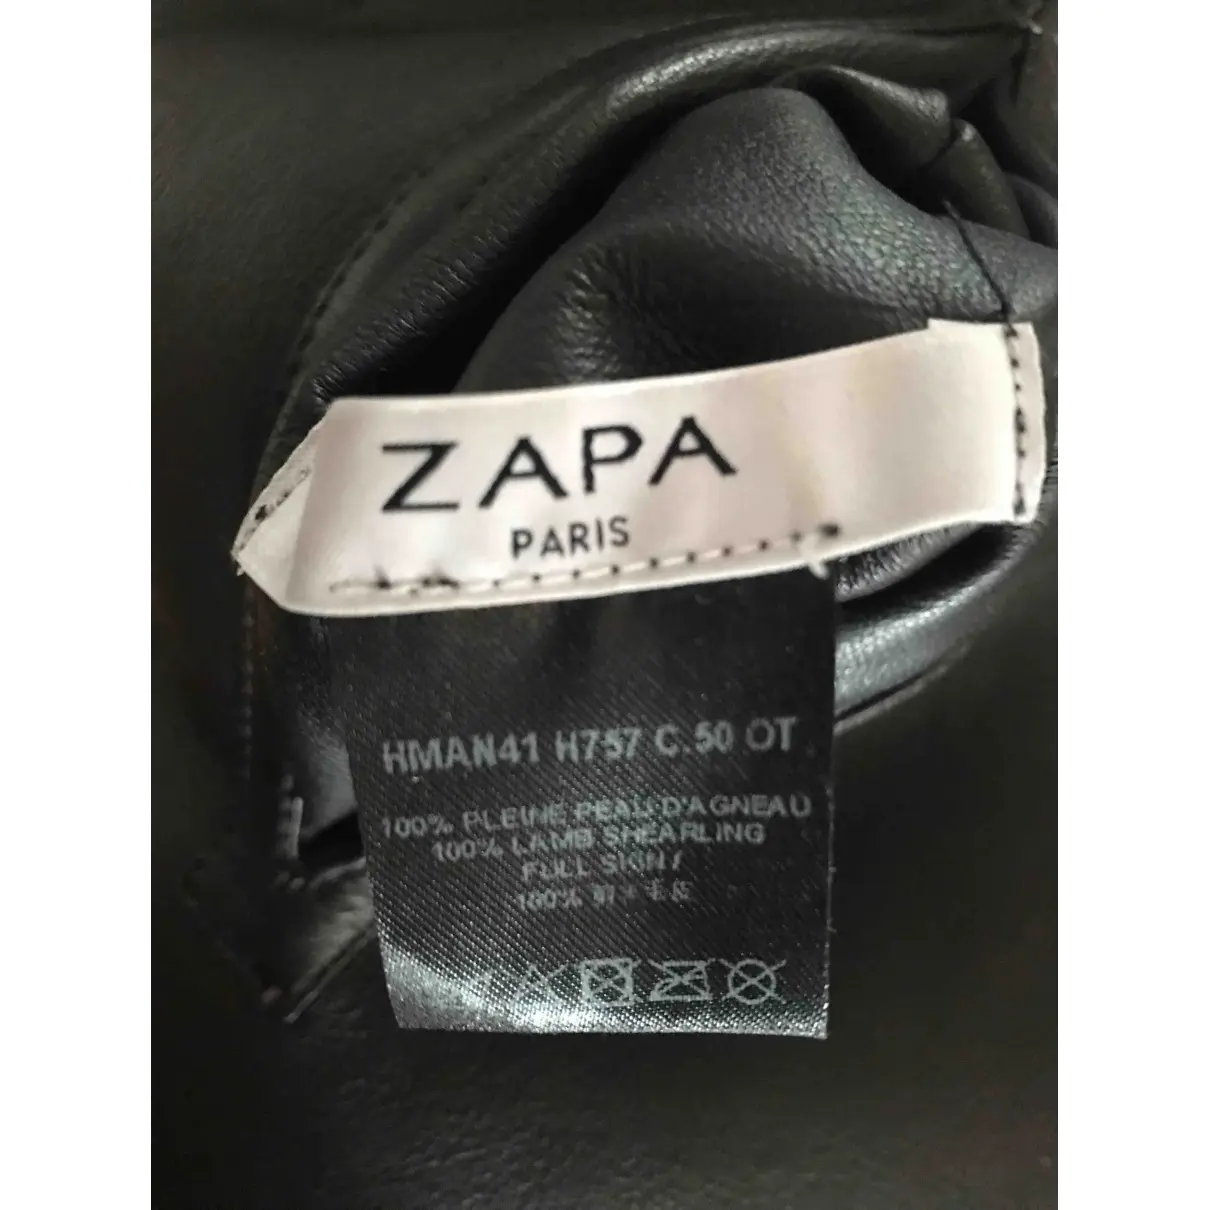 Luxury Zapa Coats Women